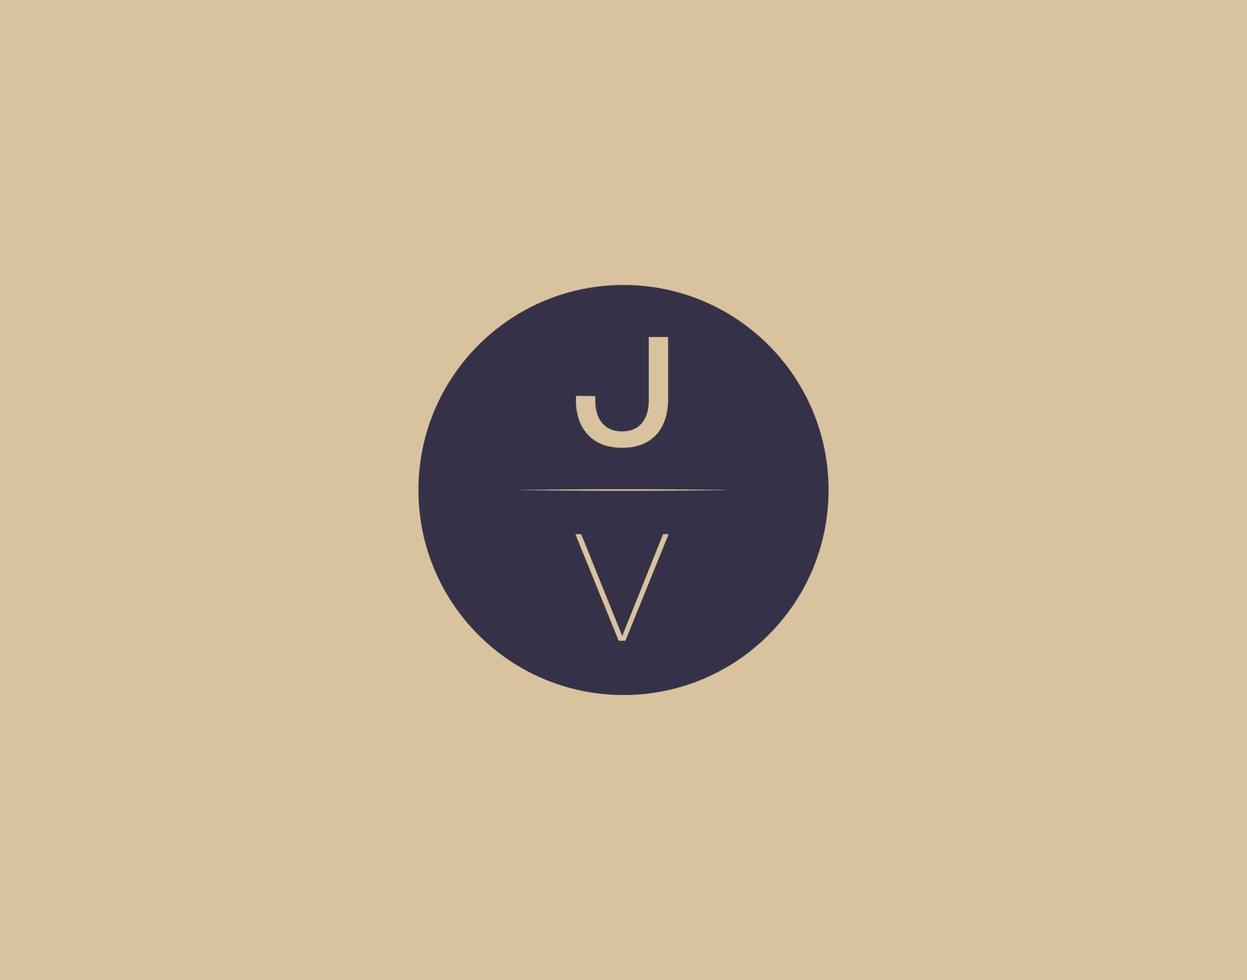 imagens vetoriais de design de logotipo moderno e elegante de carta jv vetor